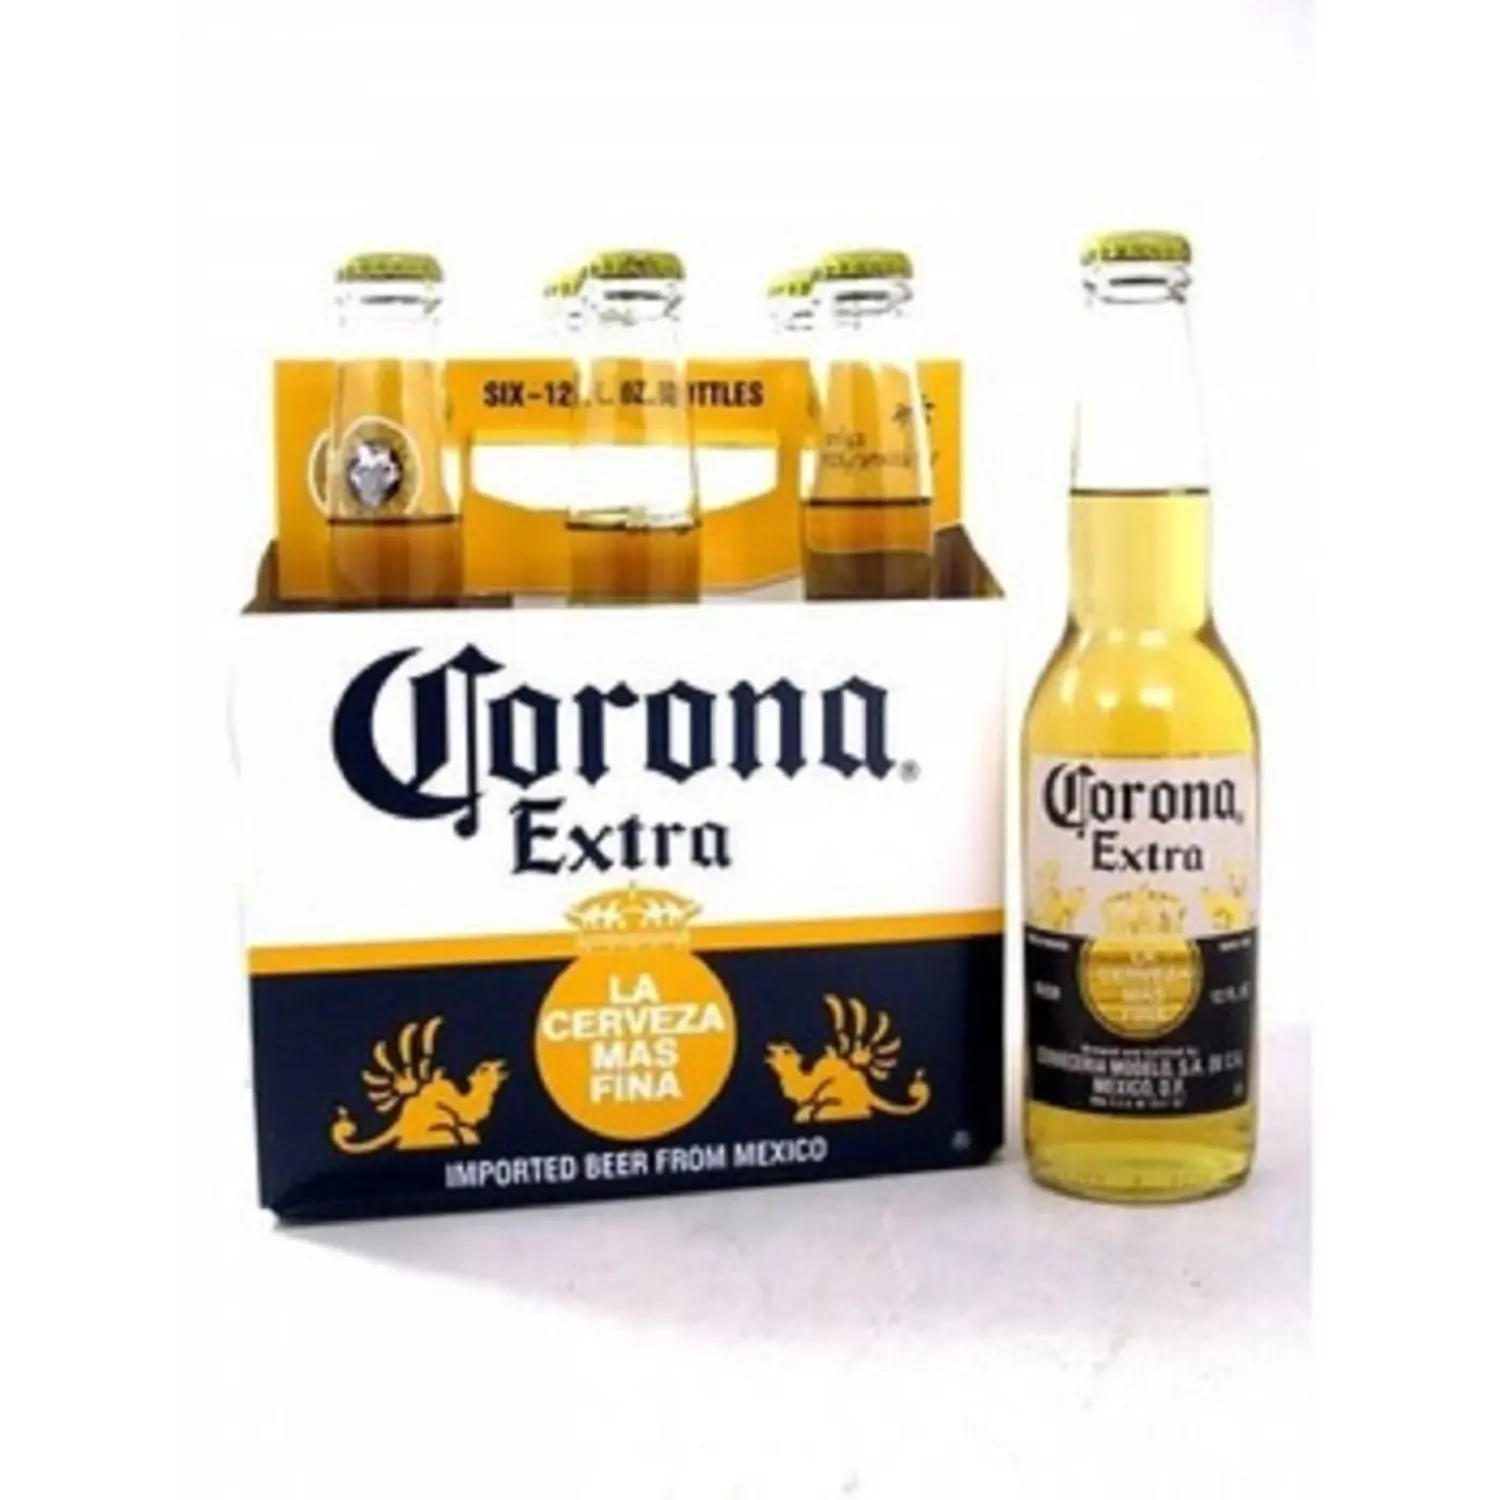 Kaliteli CORONA EXTRA bira 330ml/355ml şişelerde düşük fiyatlar